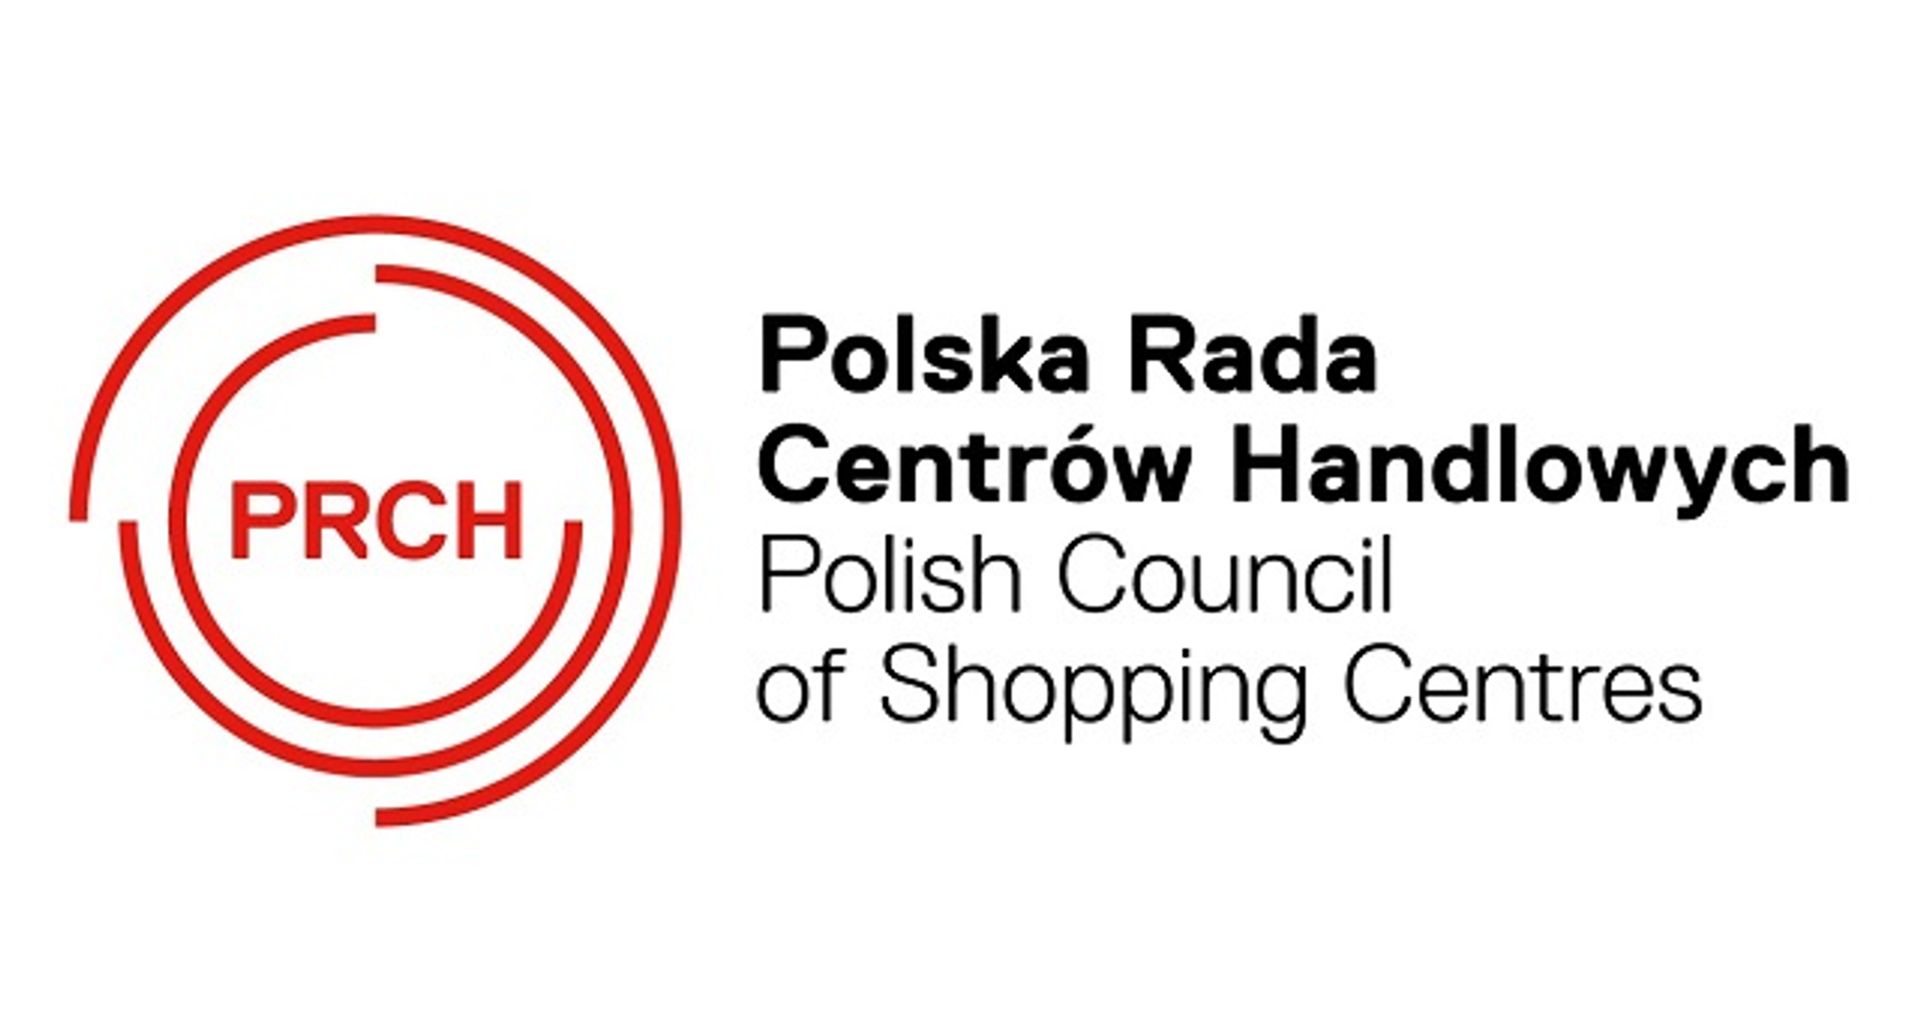  Polski rynek wciąż atrakcyjny dla deweloperów i sieci handlowych